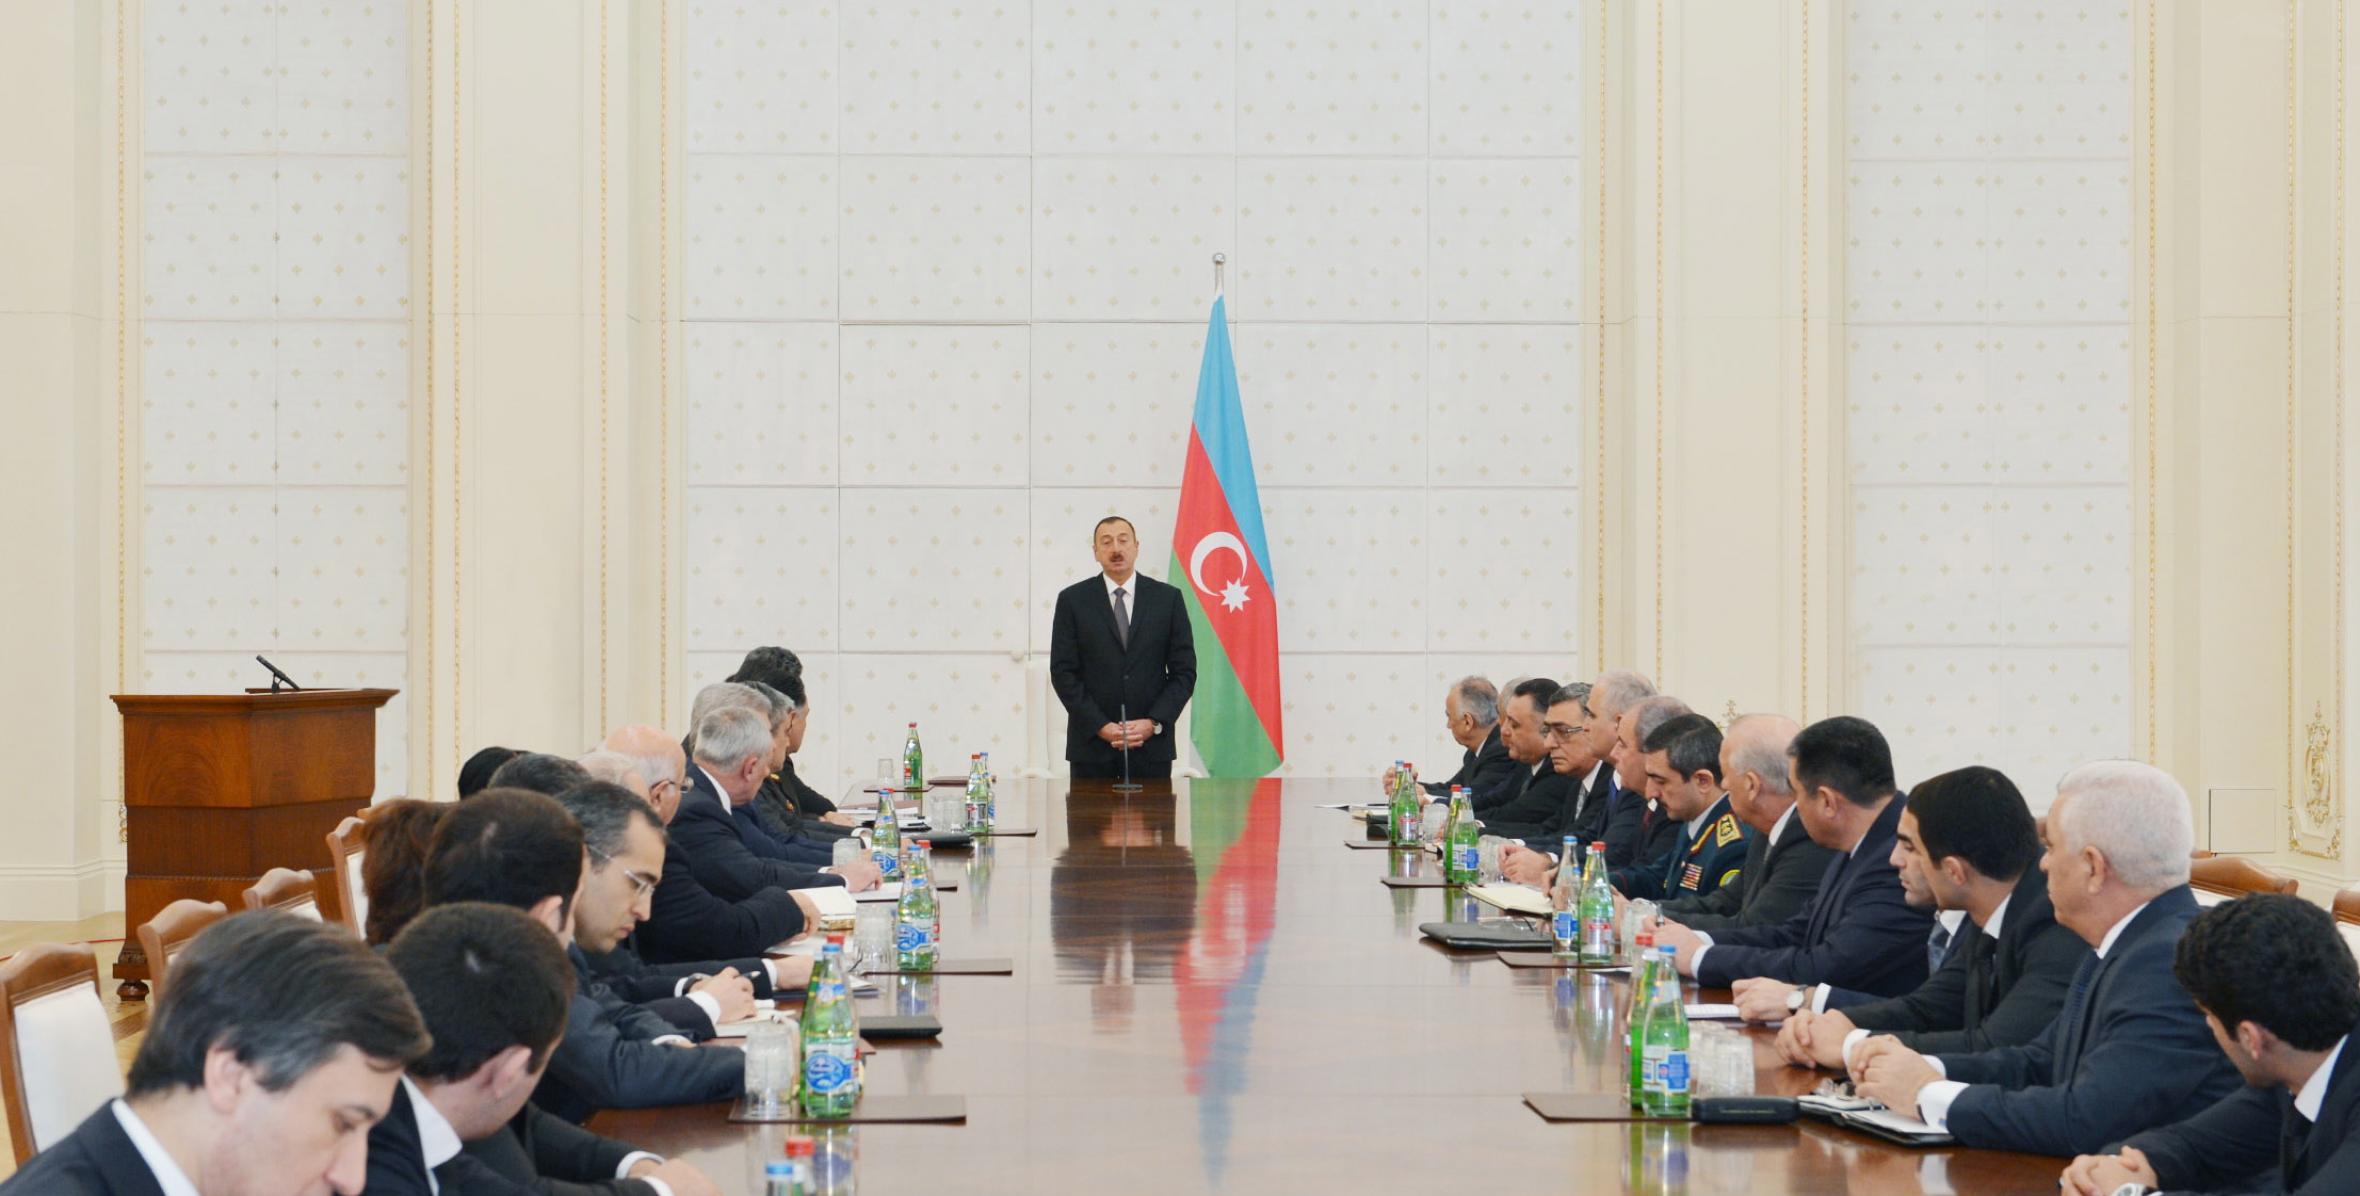 Под председательством Ильхама Алиева состоялось первое заседание Организационного комитета первых Европейских игр, которые пройдут в Баку в 2015 году